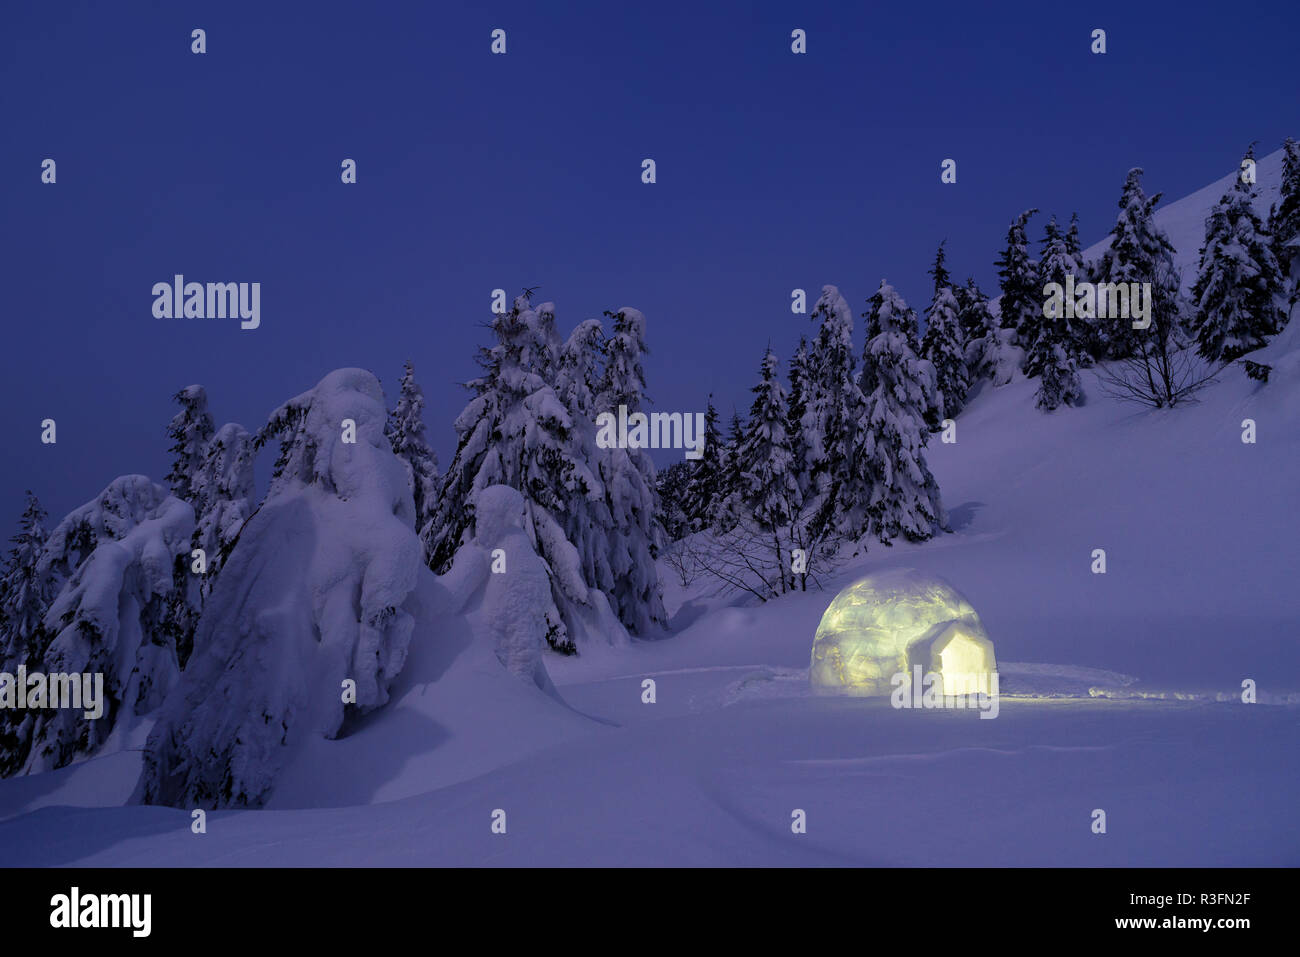 Notte paesaggio invernale con igloo. Lo splendido paesaggio con cumuli di neve e alberi nella neve Foto Stock